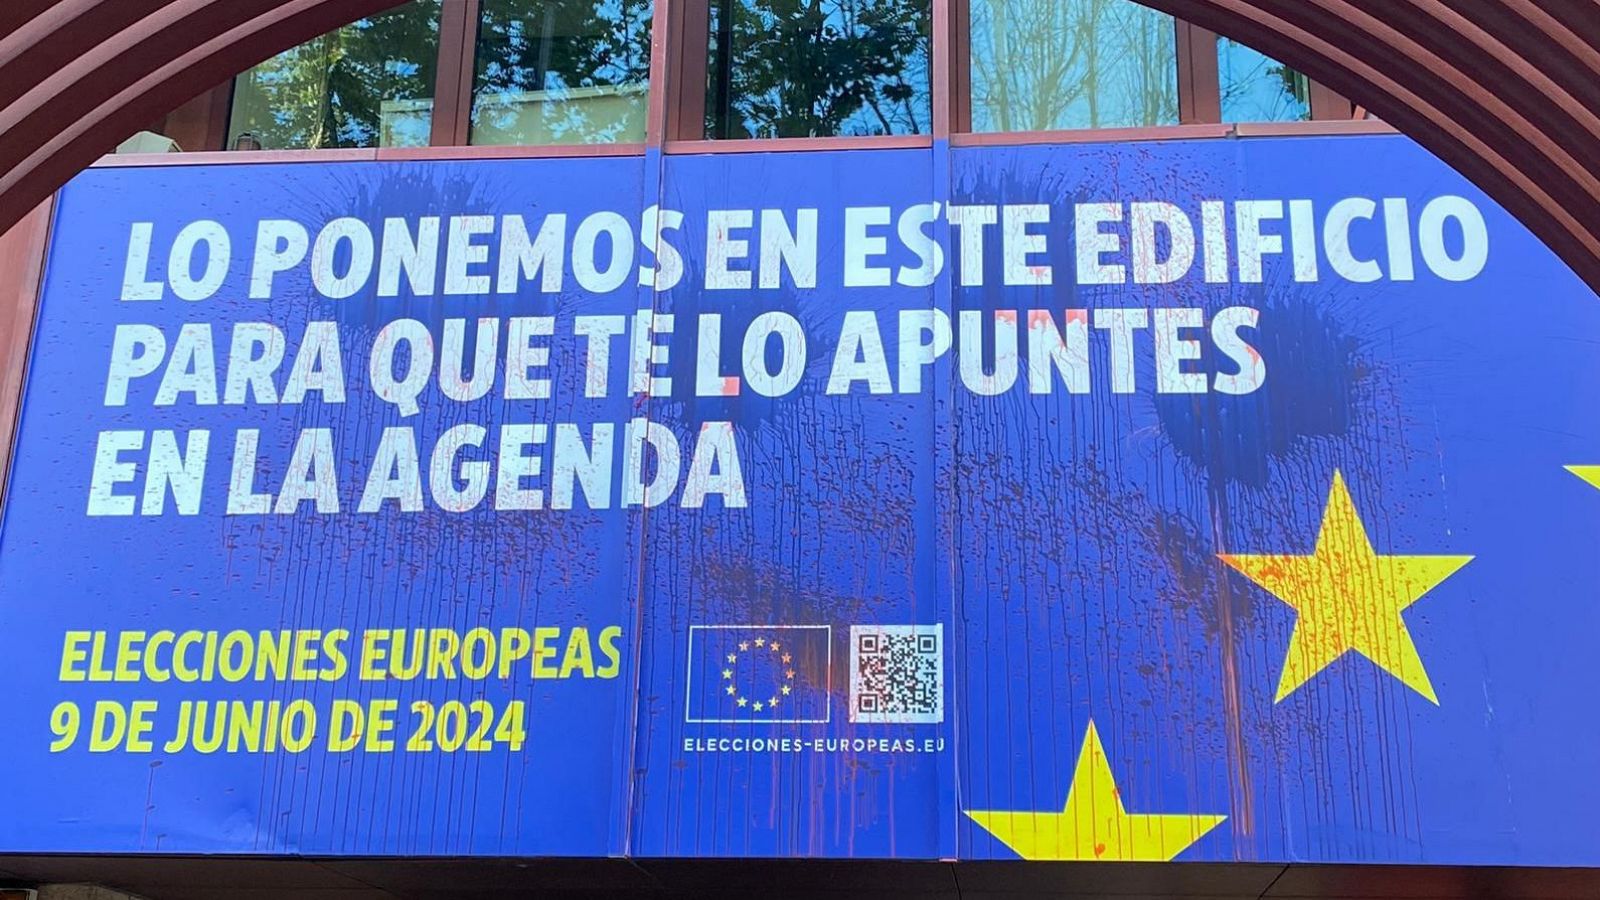 La sede del Parlamento Europeo en Madrid amanece con pintura roja